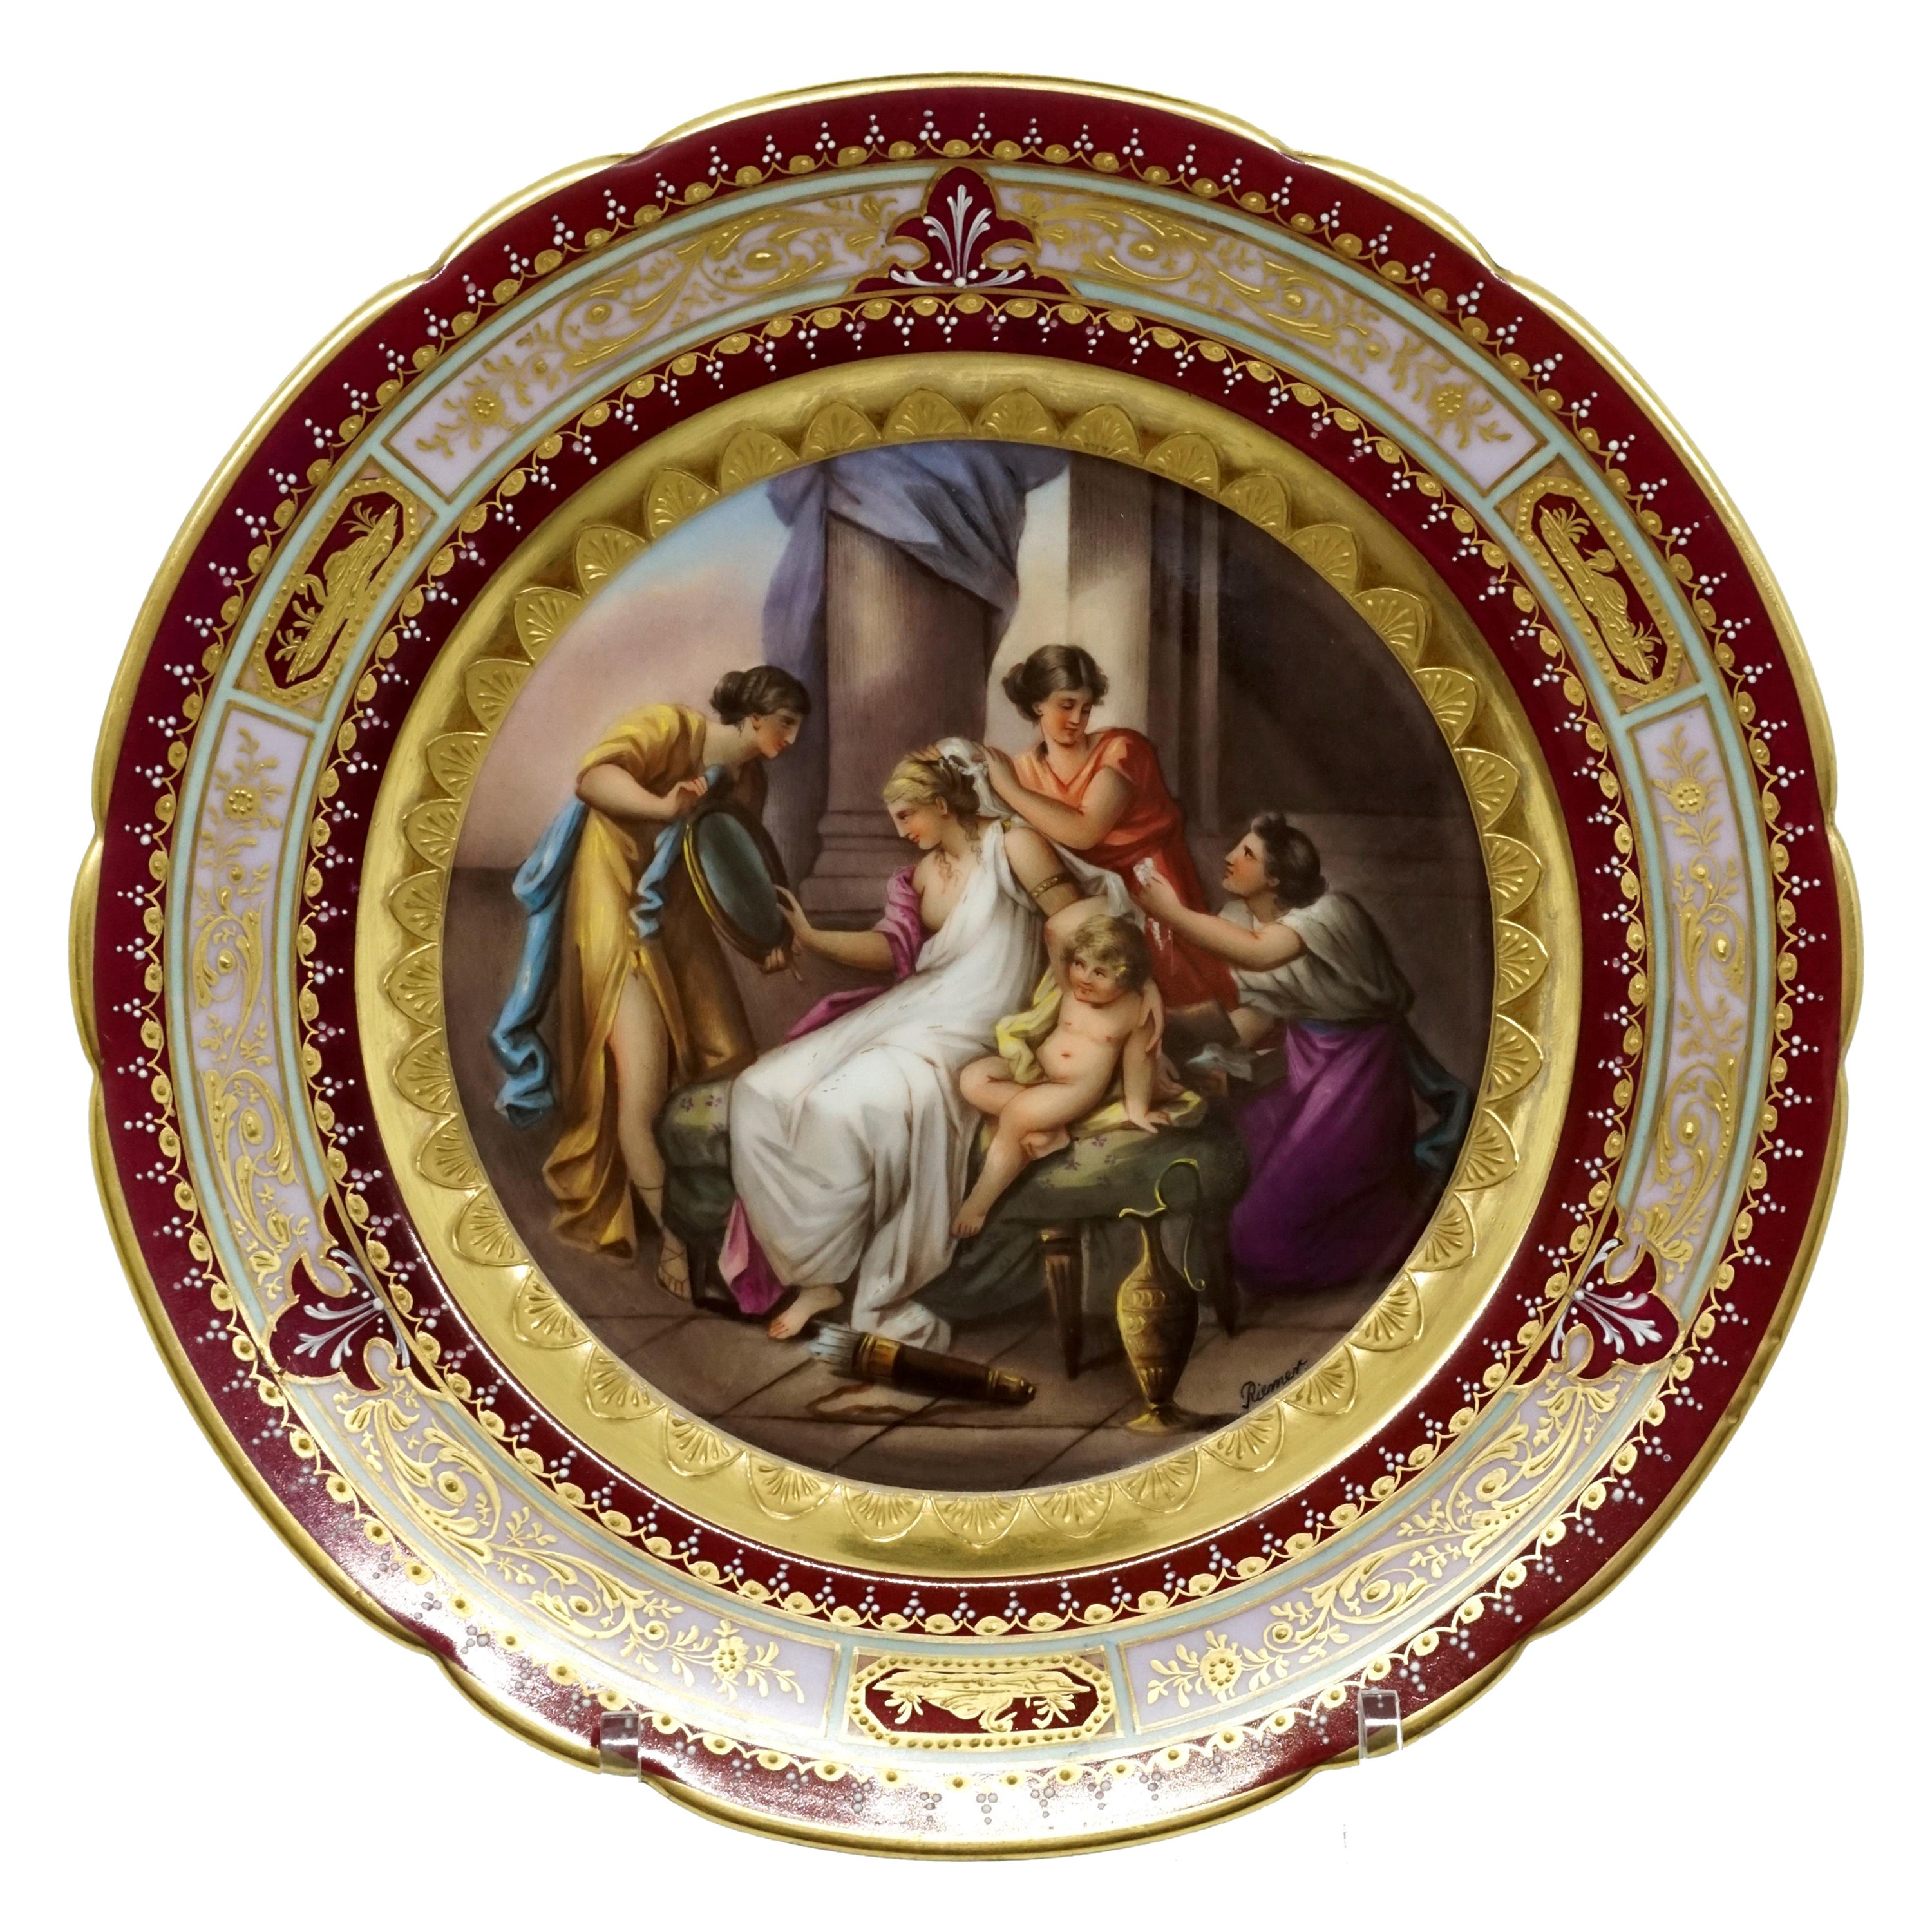 Assiette à photos Splendour royale de Vienne « Ornement de Vénus », vers 1890